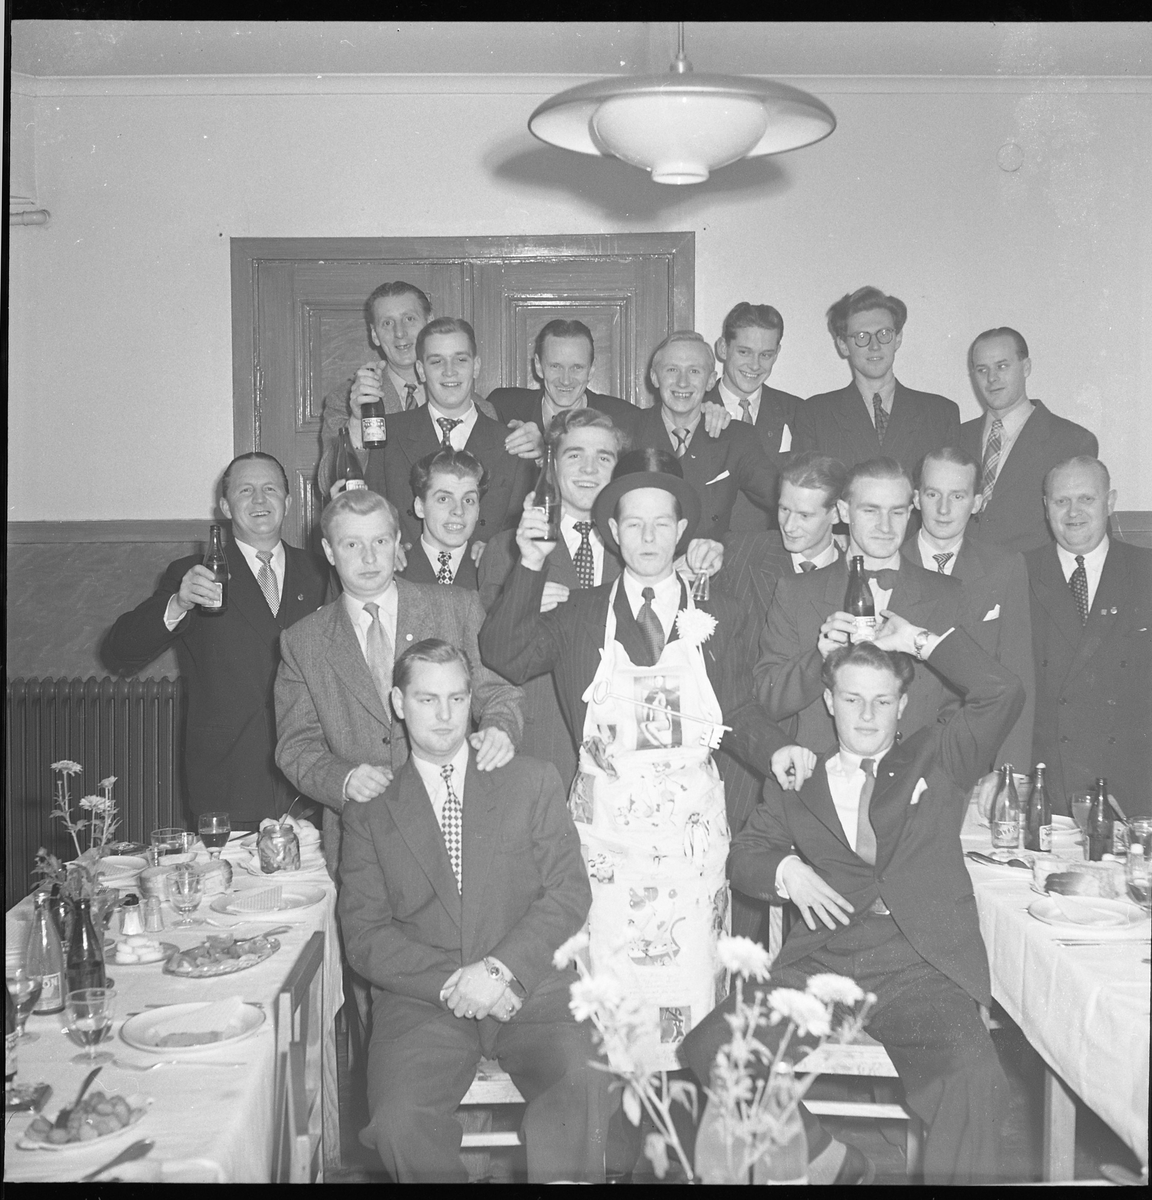 Grupp oidentifierade män på kalas. Eventuellt en svensexa. Nov 1950